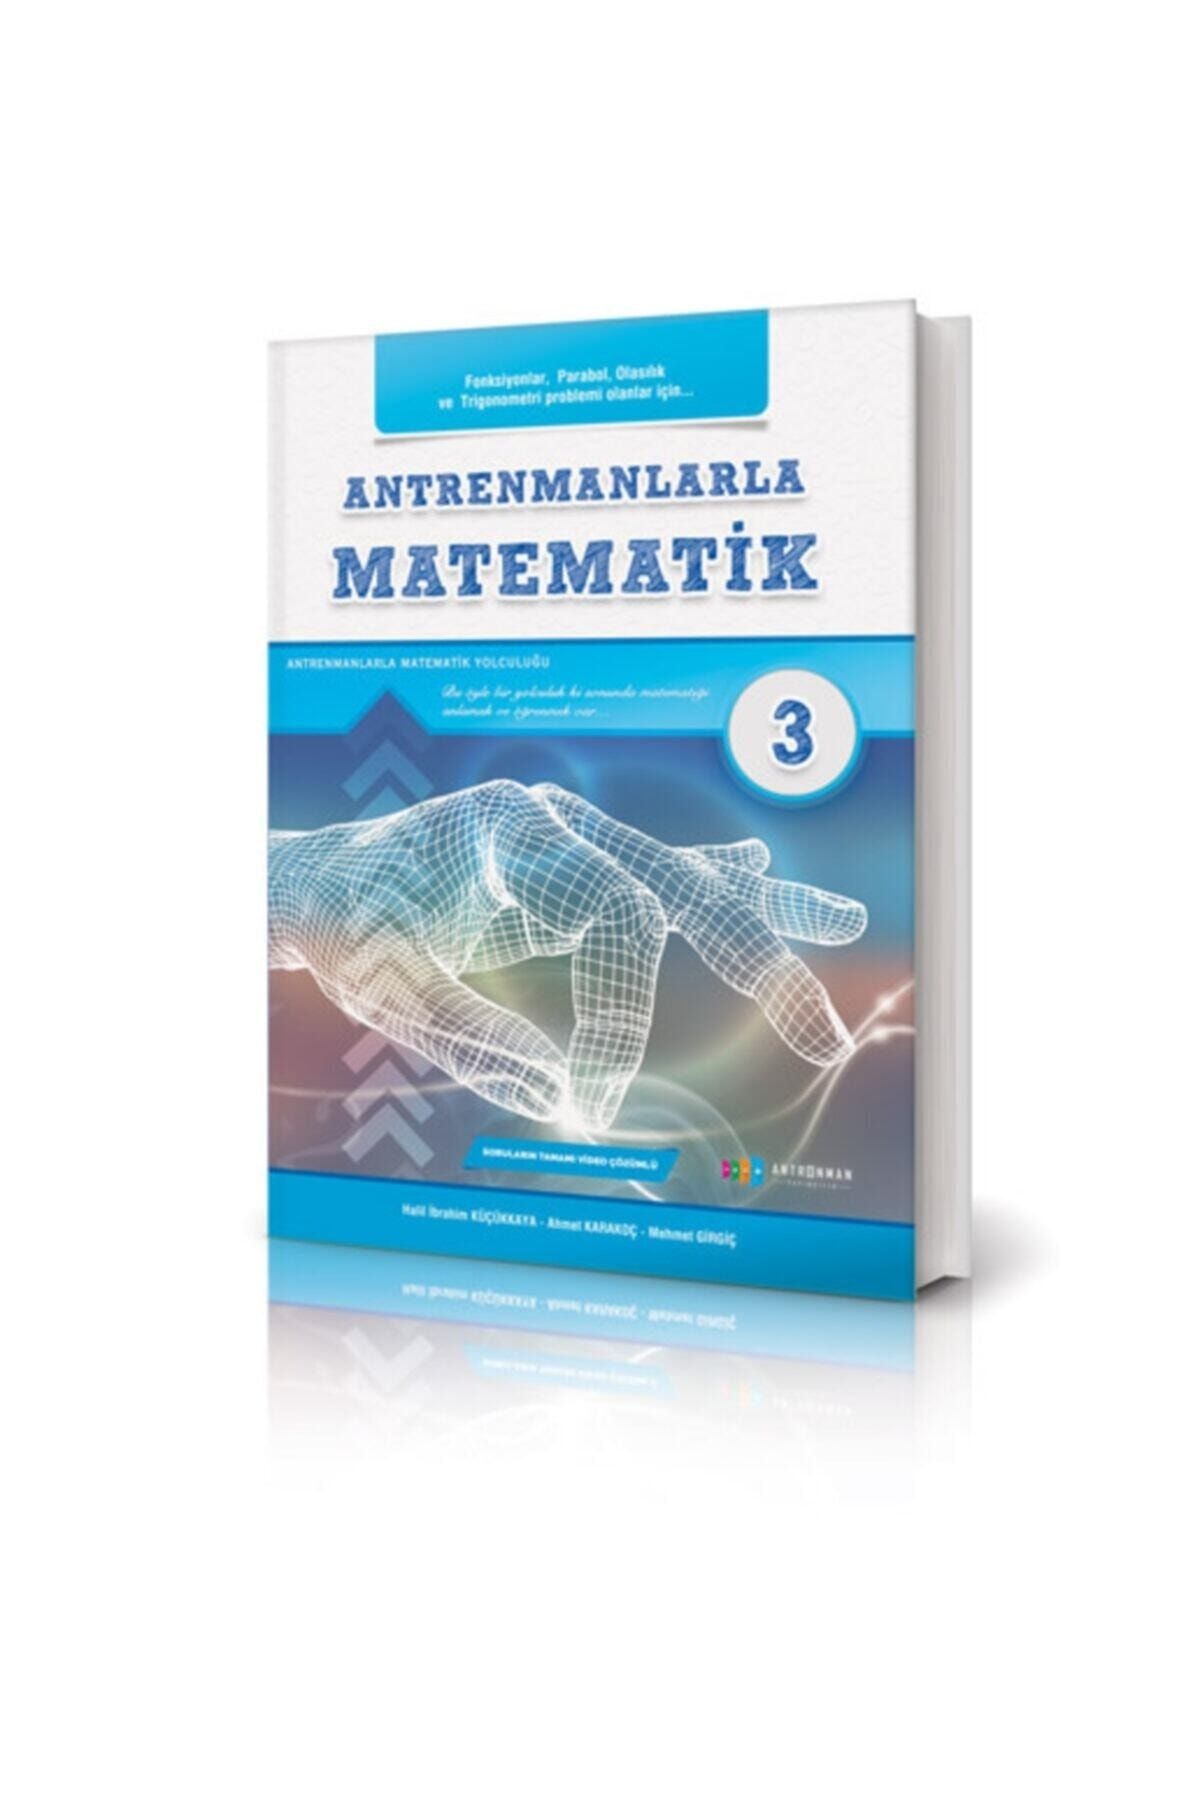 Antrenman Yayınları Antrenmanlarla Matematik 3. Kitap Antrenman Yayınları